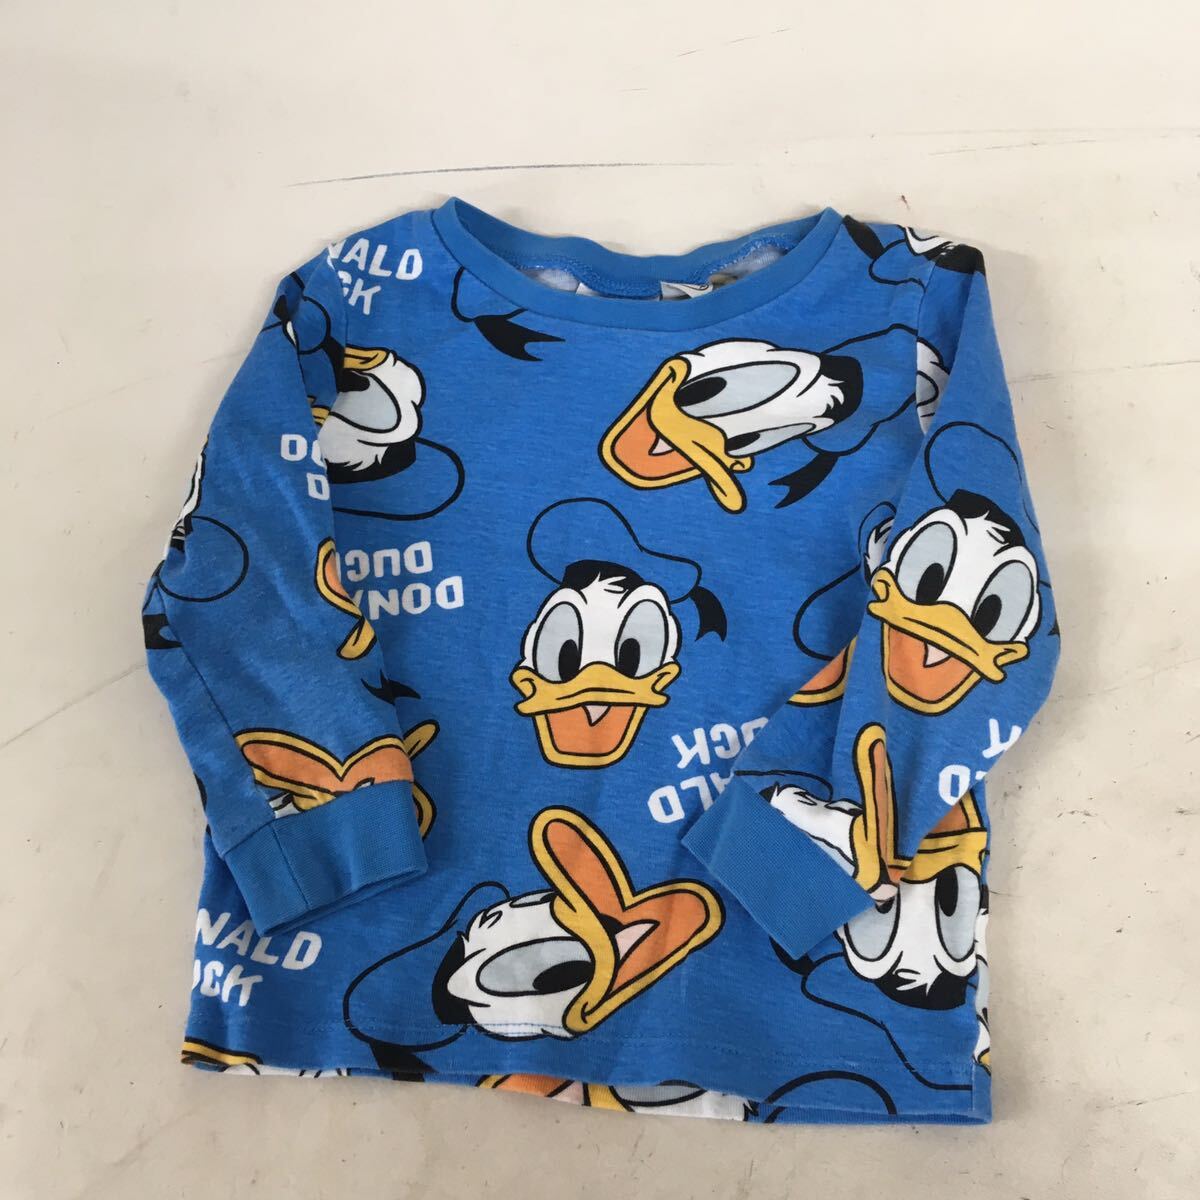  бесплатная доставка *H&M Disney H and M Disney * пижама верх и низ в комплекте выставить *90.2 лет мужчина baby Kids #60329sgg